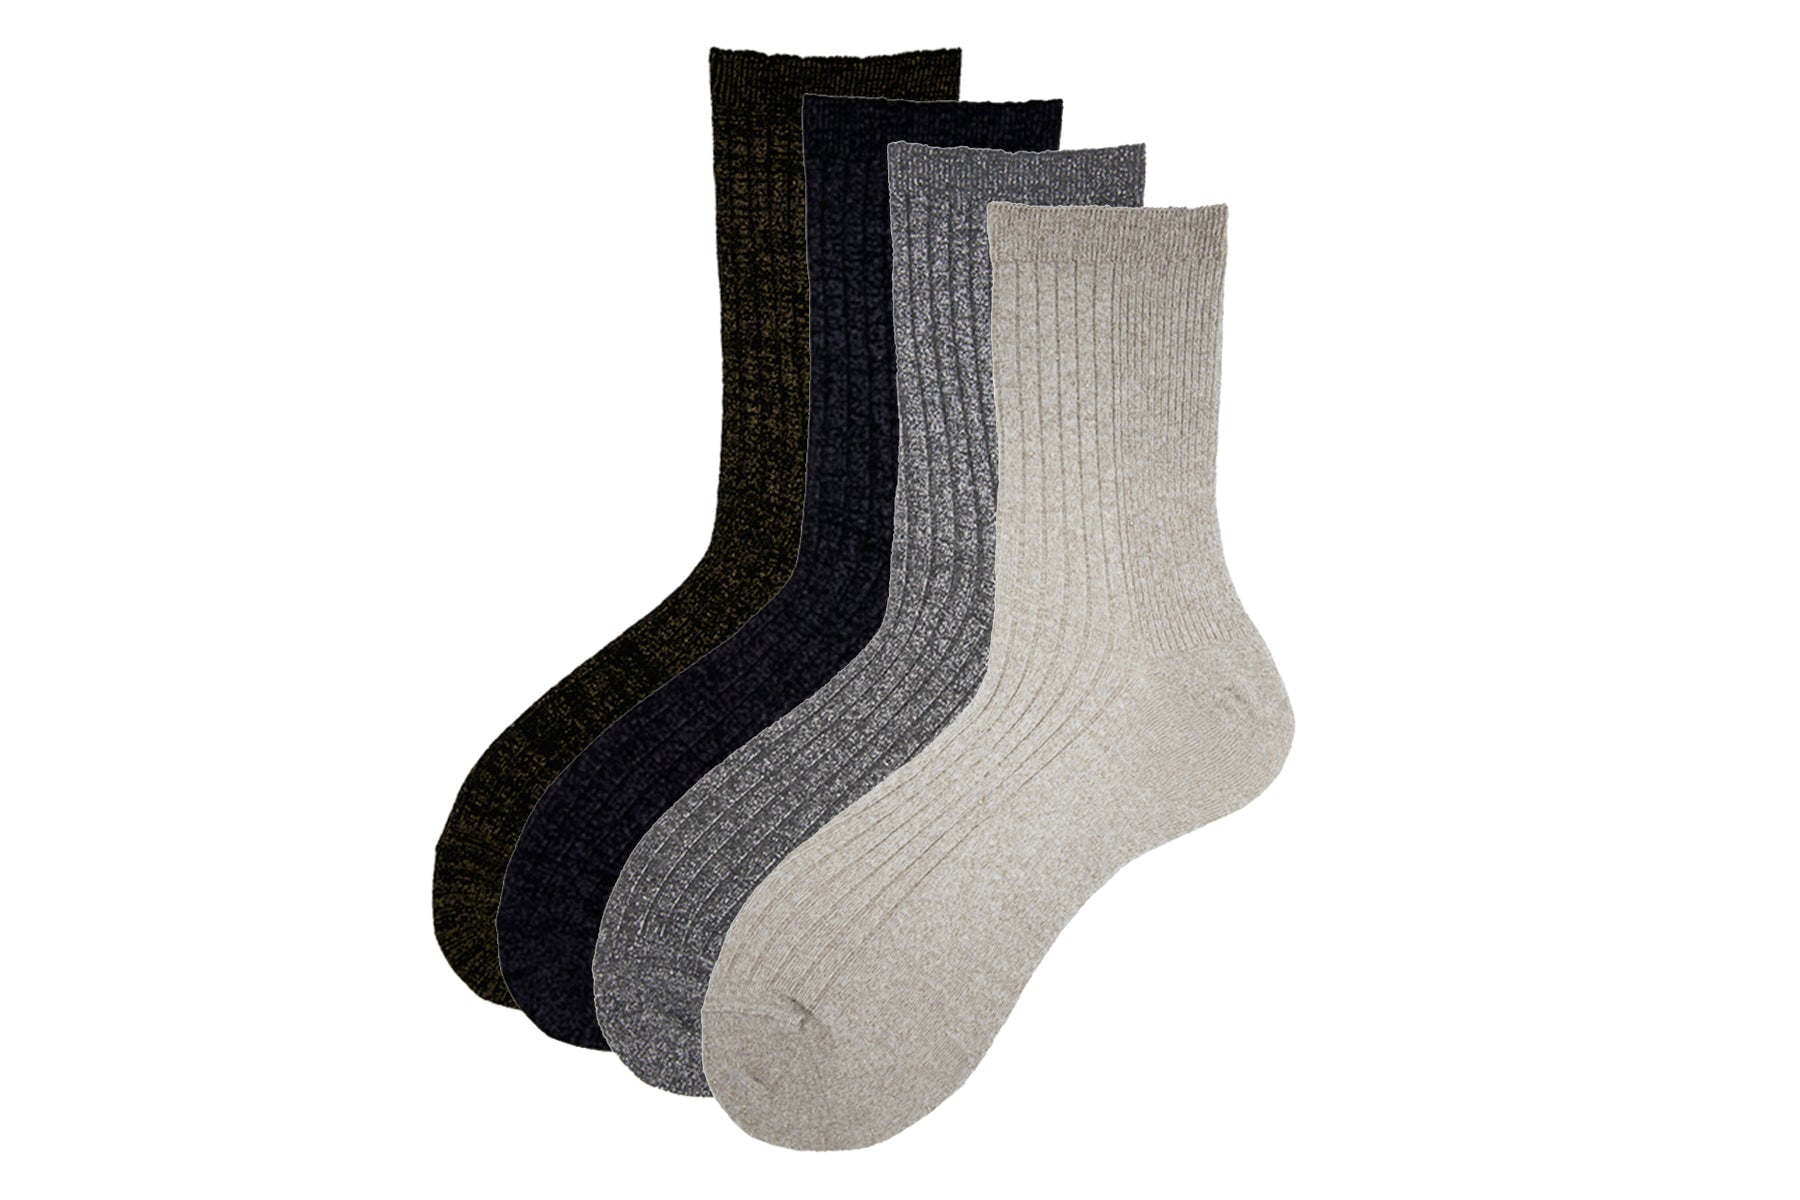 Damen Socken aus Baumwolle in Hellgrau mit silbernem Glitzerfaden - N.92 Damen Socken Alto Milano 